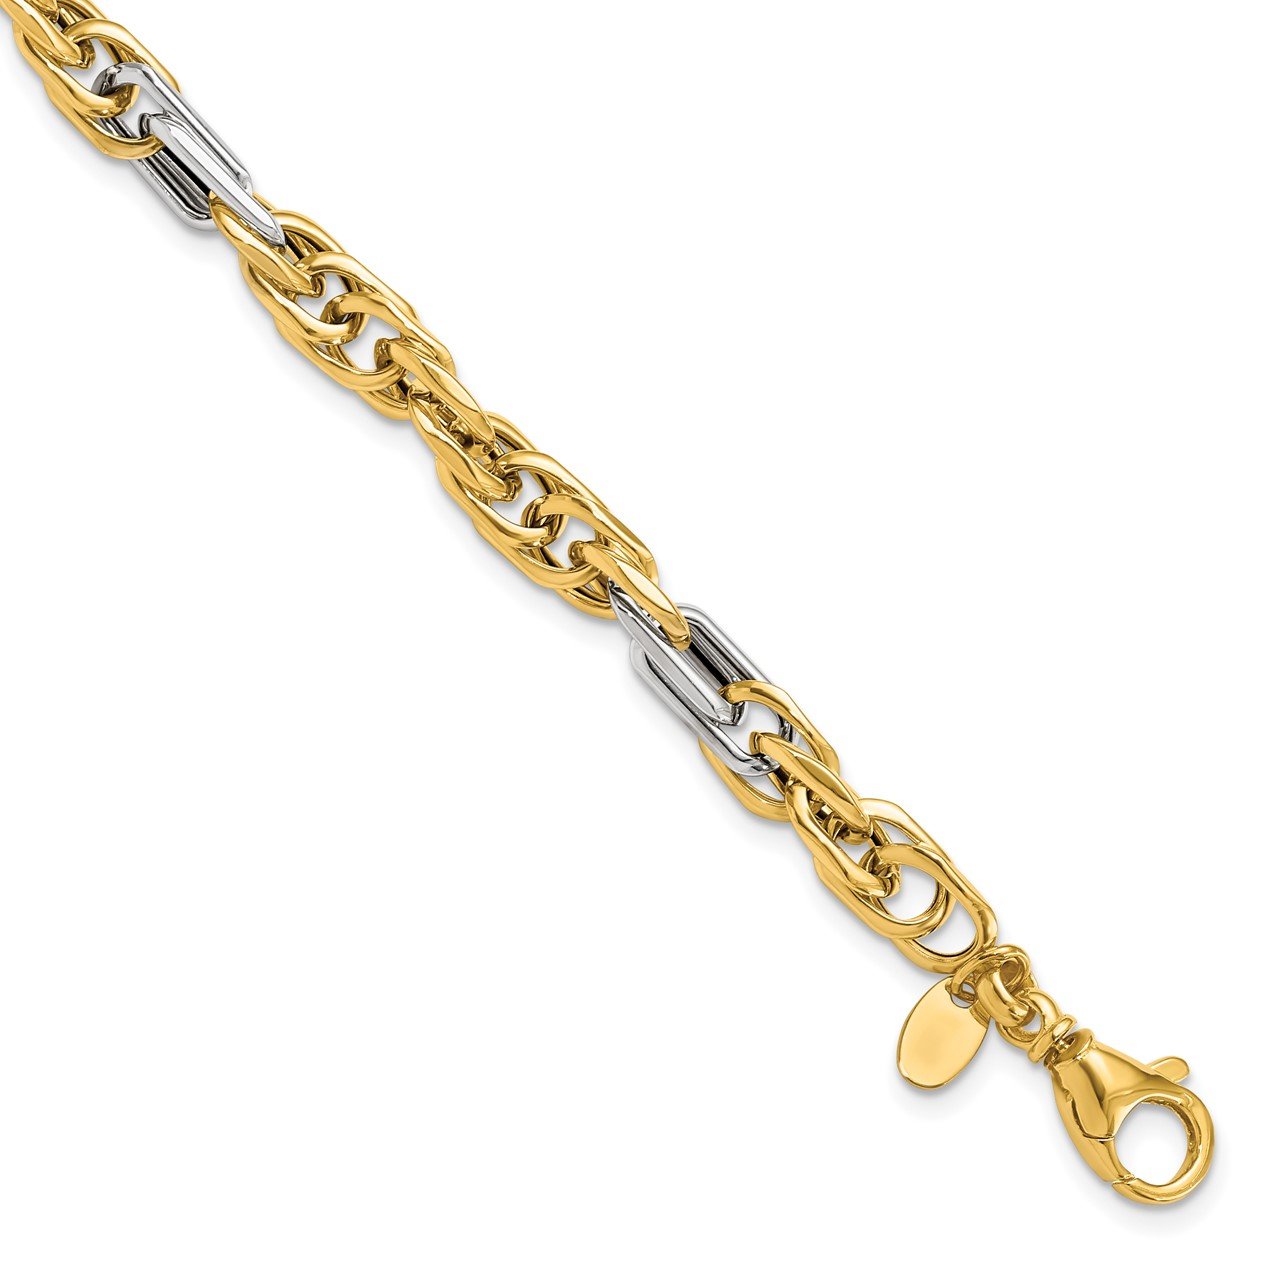 Leslie's 14K Men's Two-tone Polished Link Bracelet